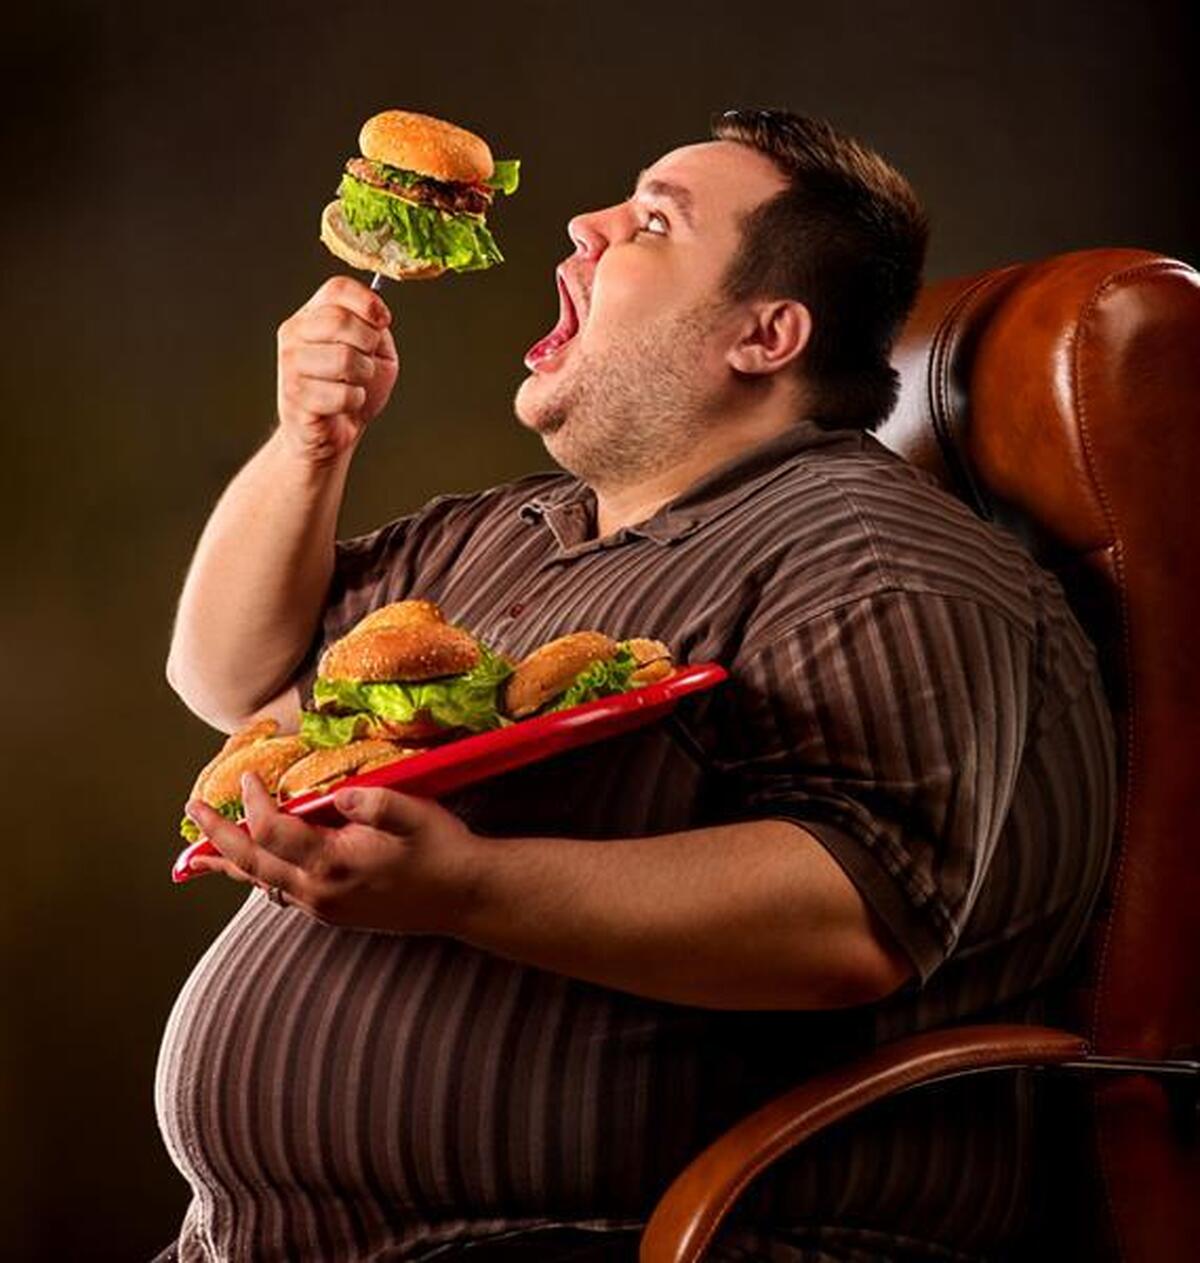 چاقی ارتباط تنگاتنگی با اضطراب و افسردگی دارد